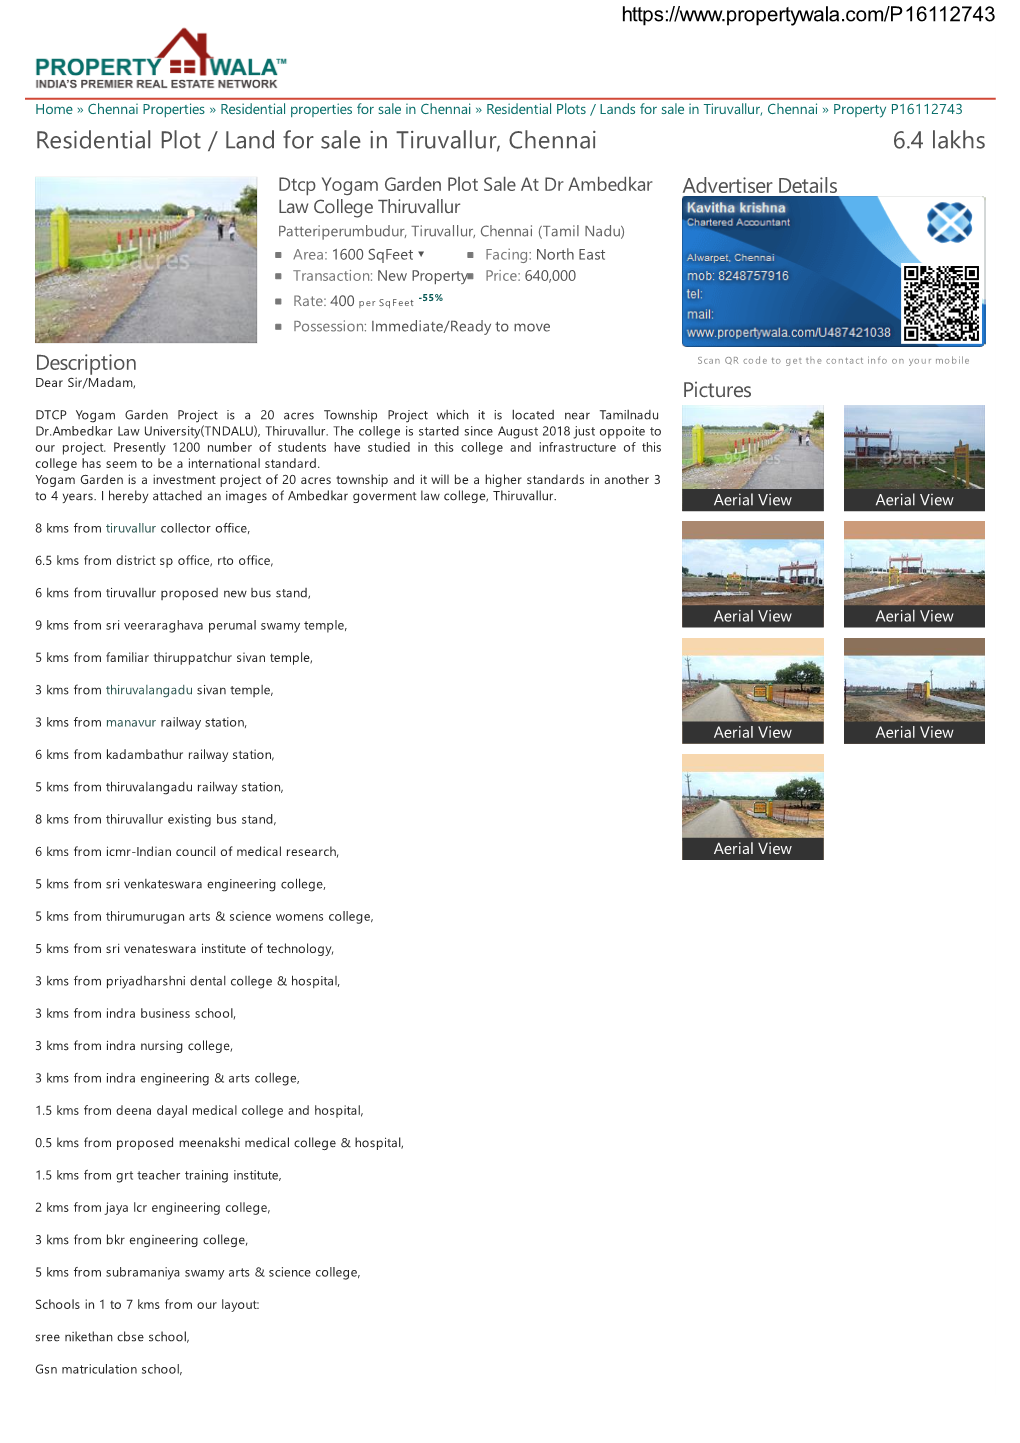 Residential Plot / Land for Sale in Tiruvallur, Chennai (P16112743